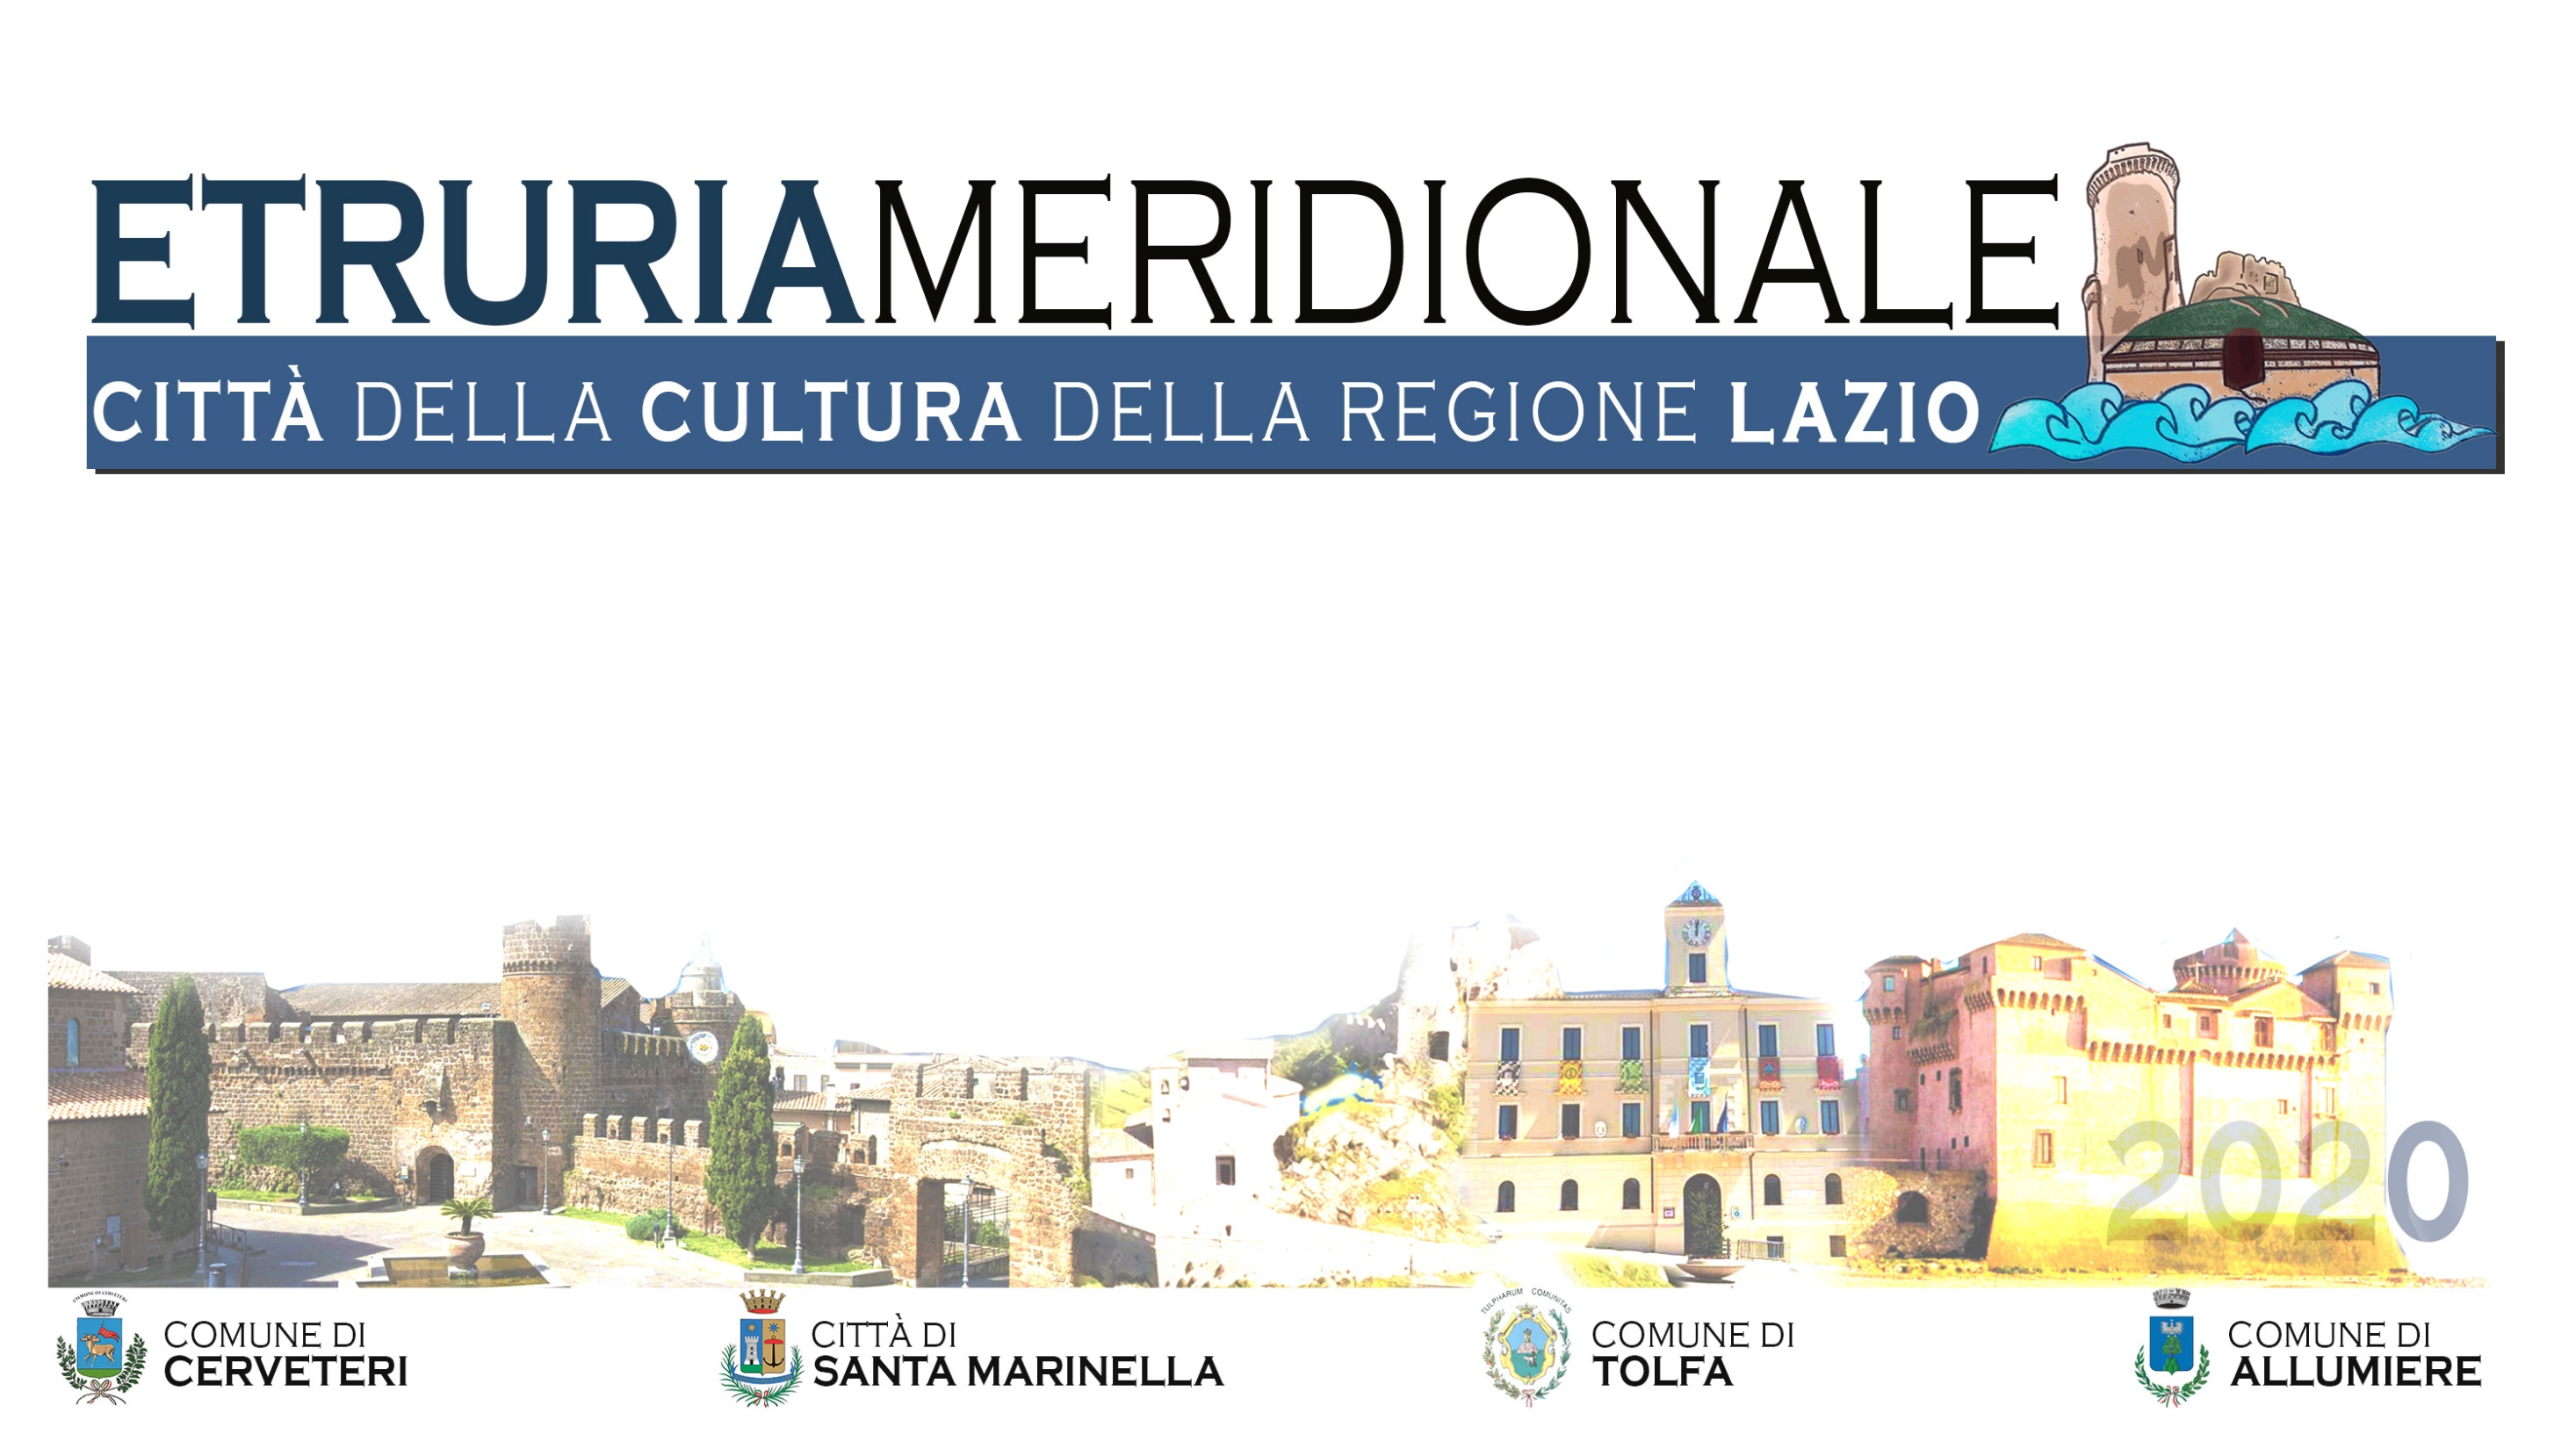 SANTA MARINELLA - Conferimento del titolo Città della Cultura della Regione Lazio. TIDEI - Vince la squadra.